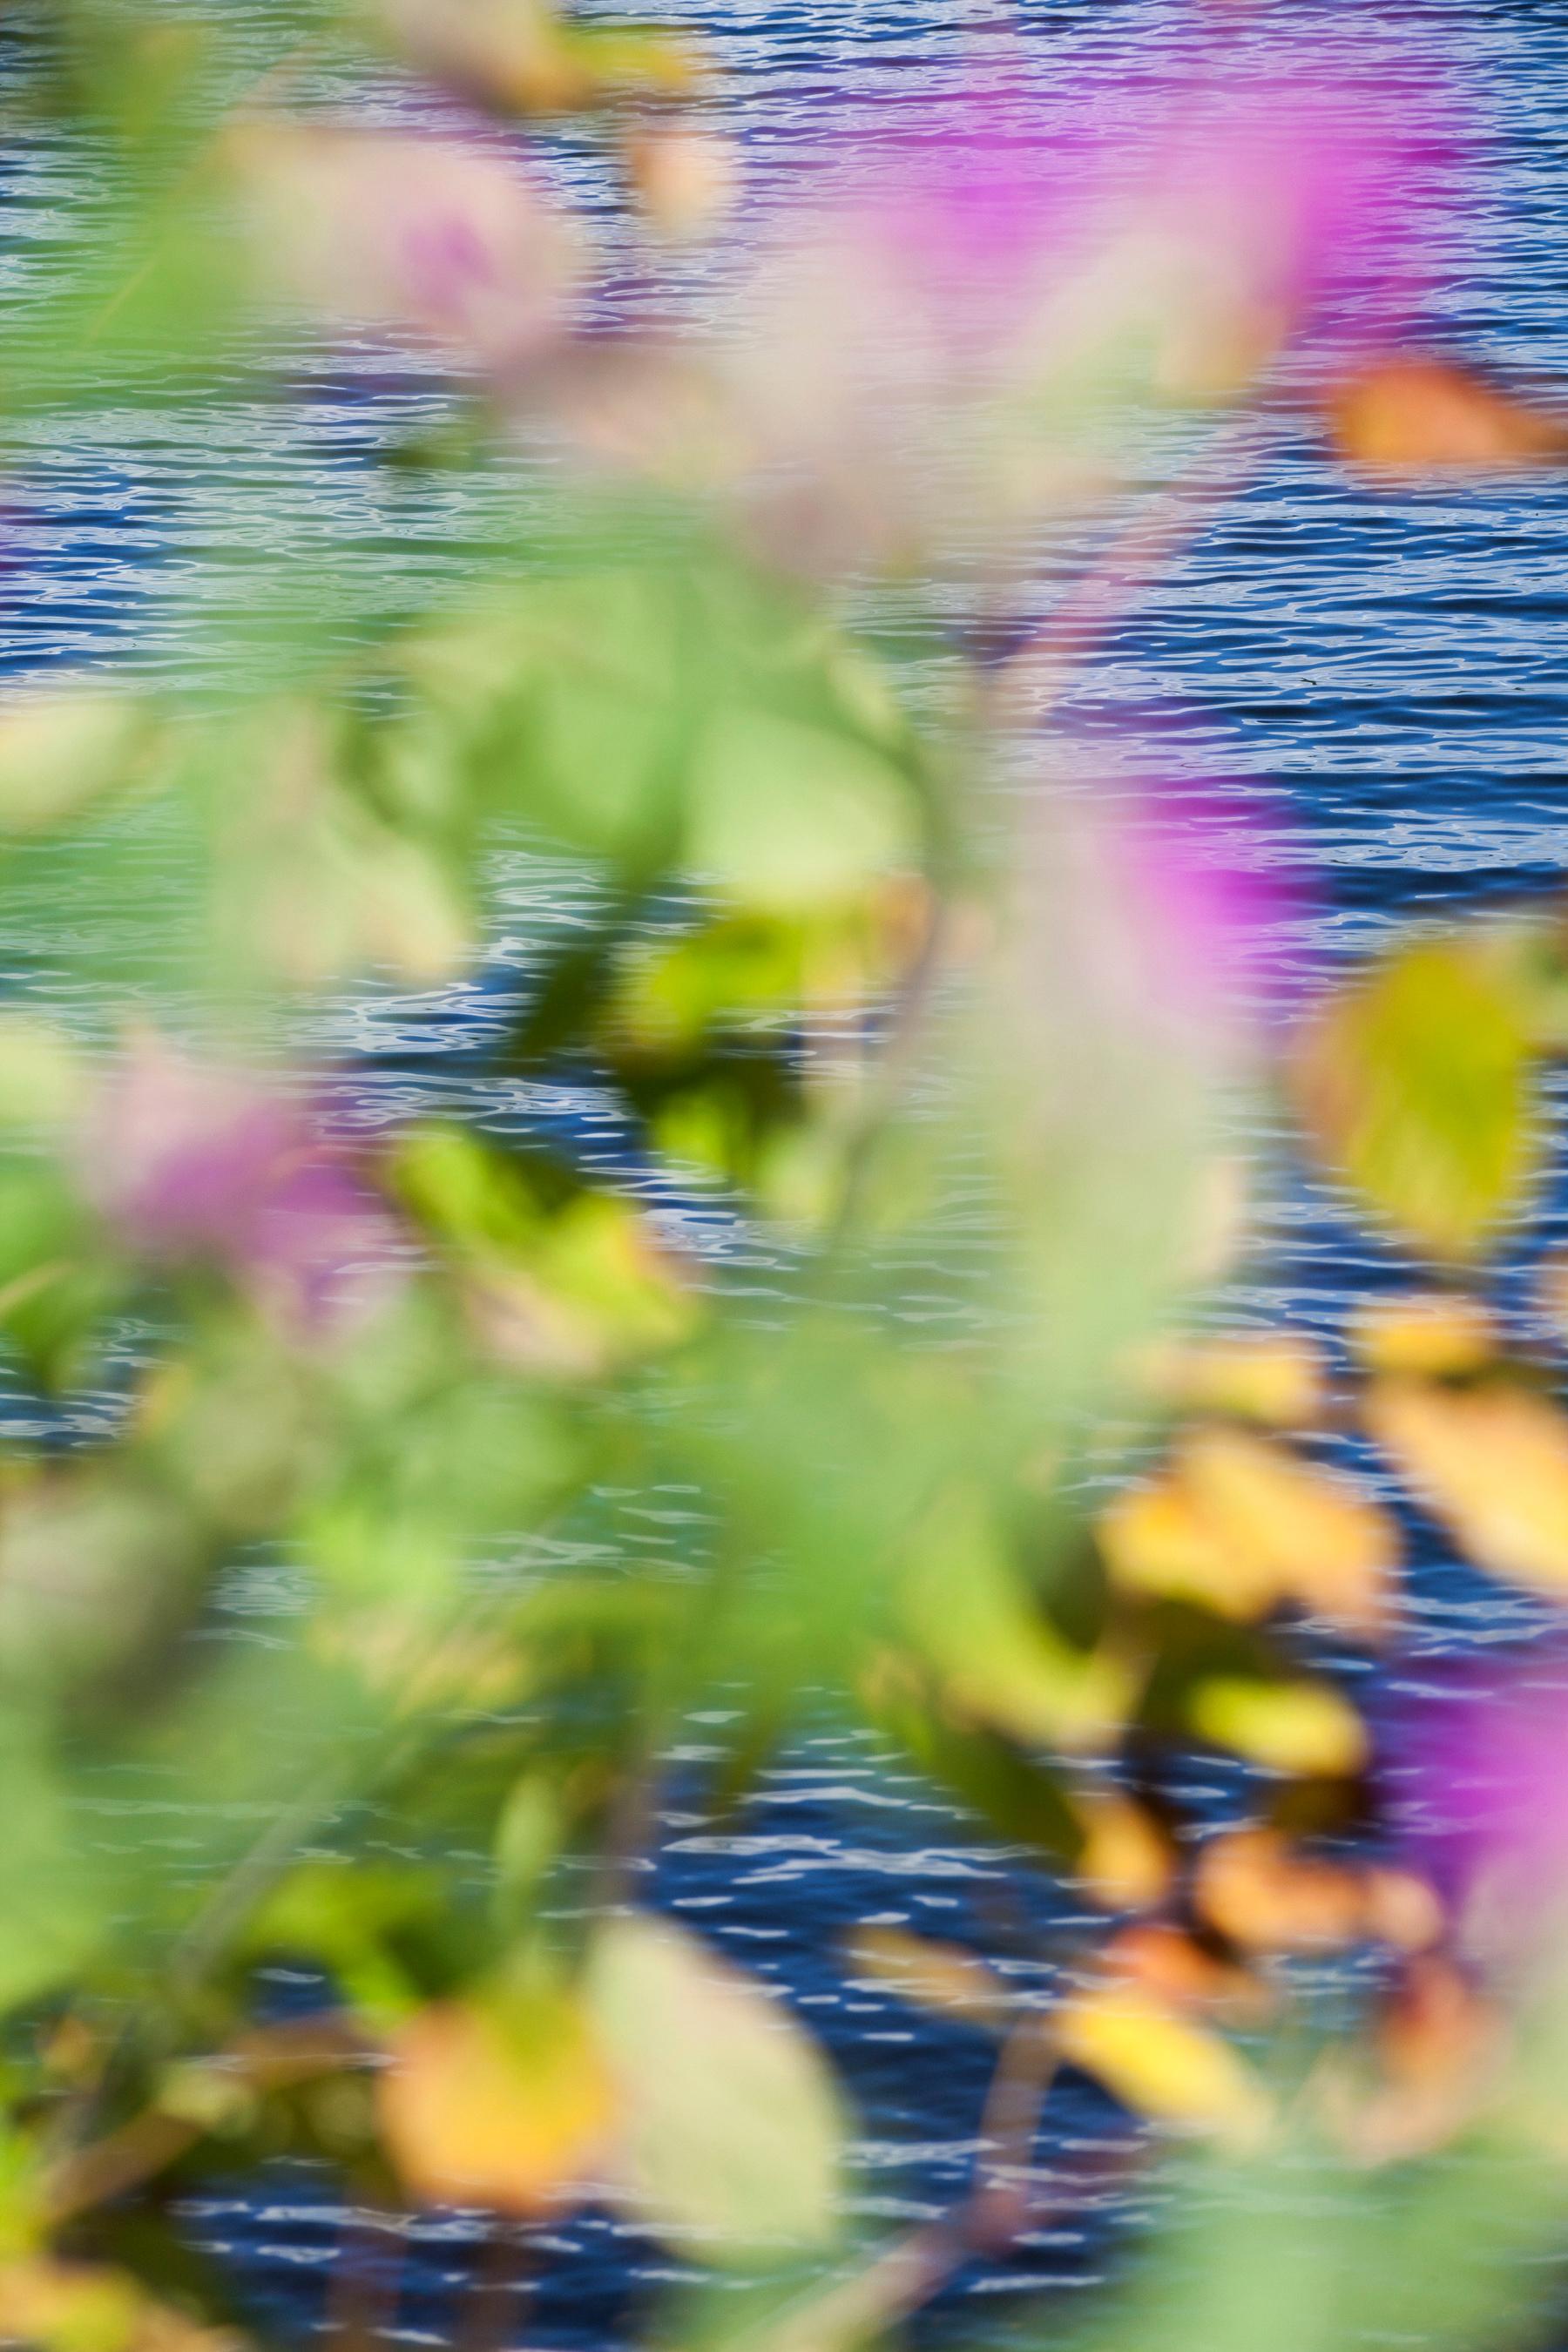 9.11.15_3:20:17' 2017 von Susan Wides, New York, zeitgenössische Kamerakünstlerin. Chromogener Druck, 5 Exemplare, 30 x 20 Zoll. / Rahmen: 30.75 x 20.75 in. Diese Farbfotografie zeigt eine abstrahierte Ansicht von Wasser, Blumen und Blättern in